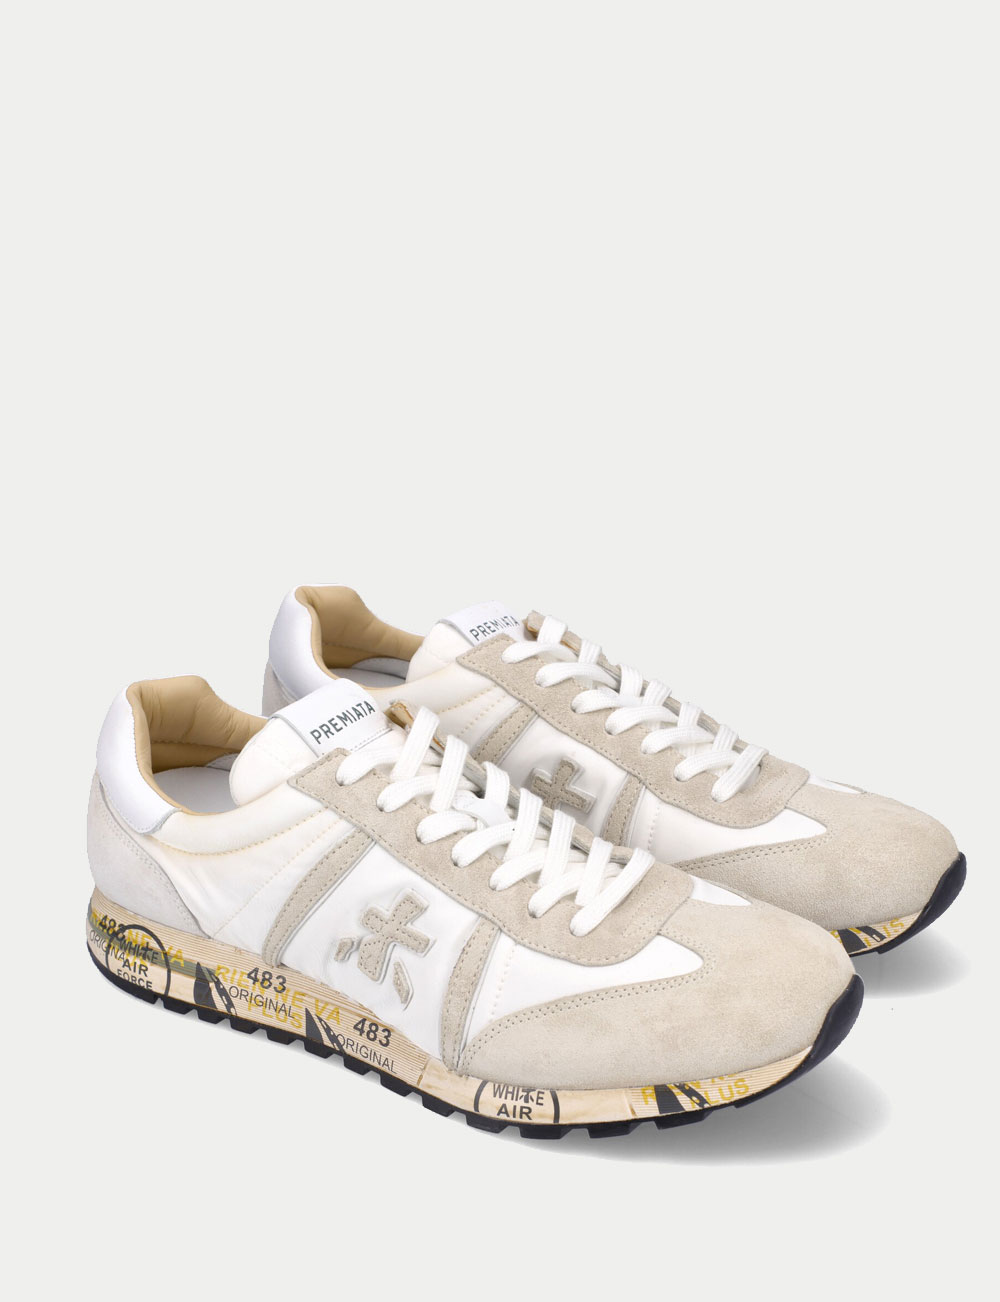 Sneakers Lucy Premiata pour homme beige et blanc